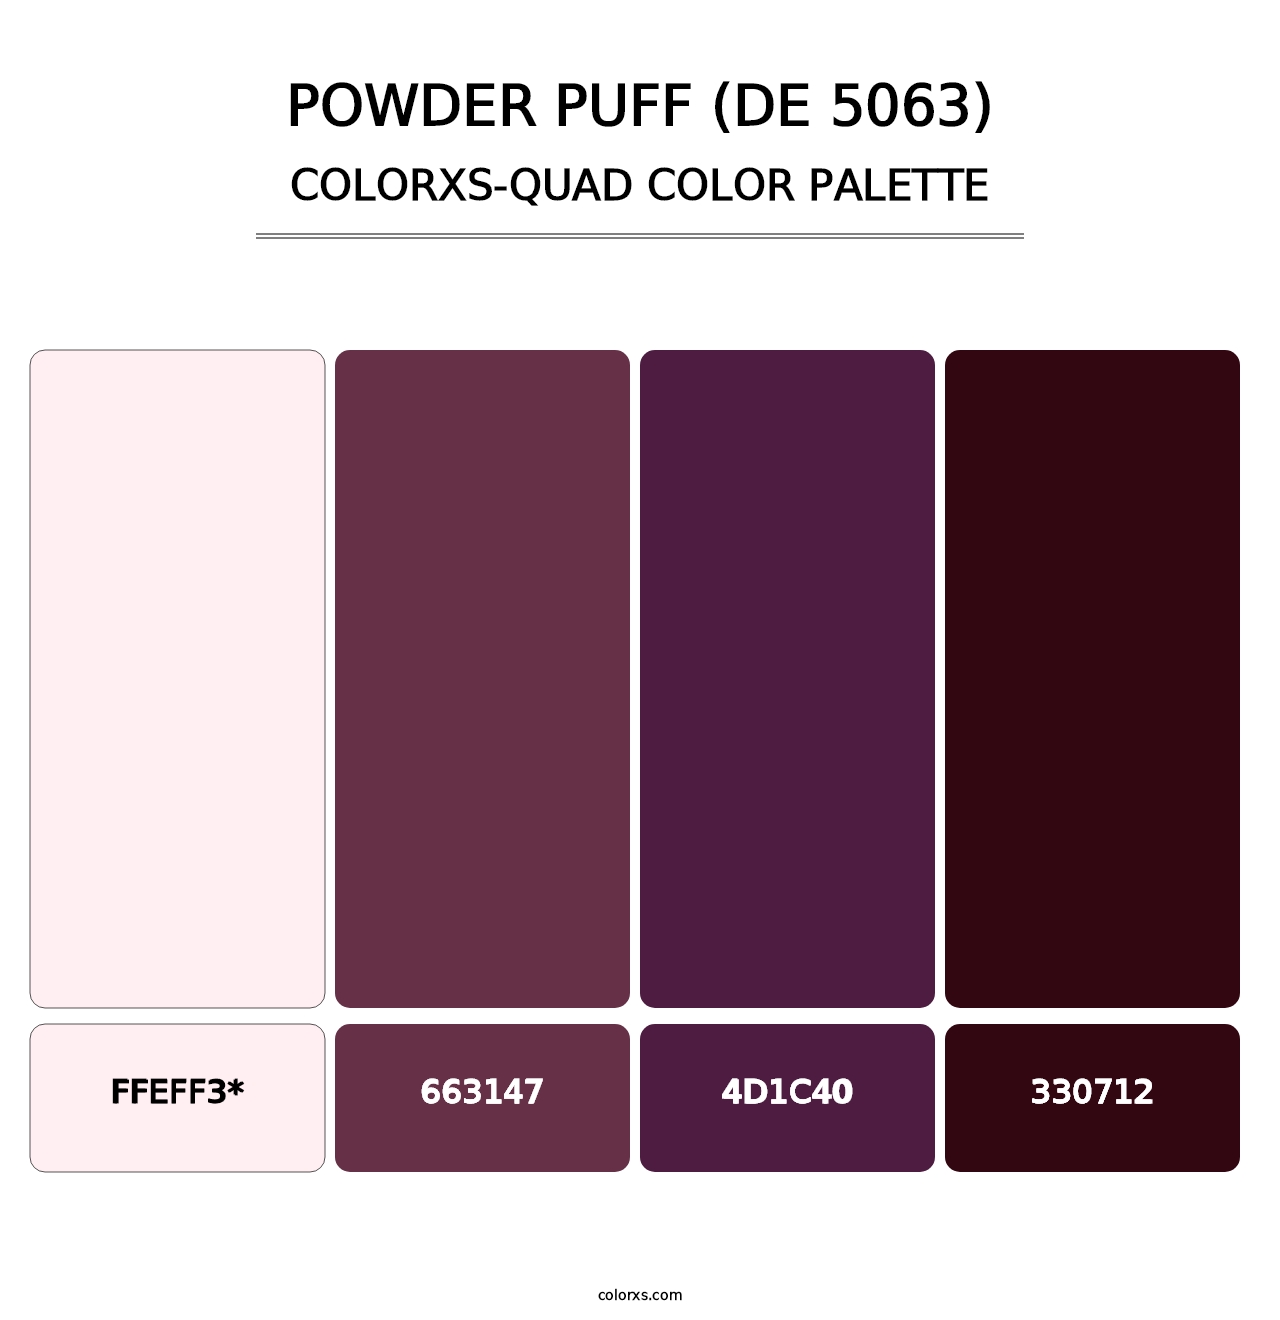 Powder Puff (DE 5063) - Colorxs Quad Palette